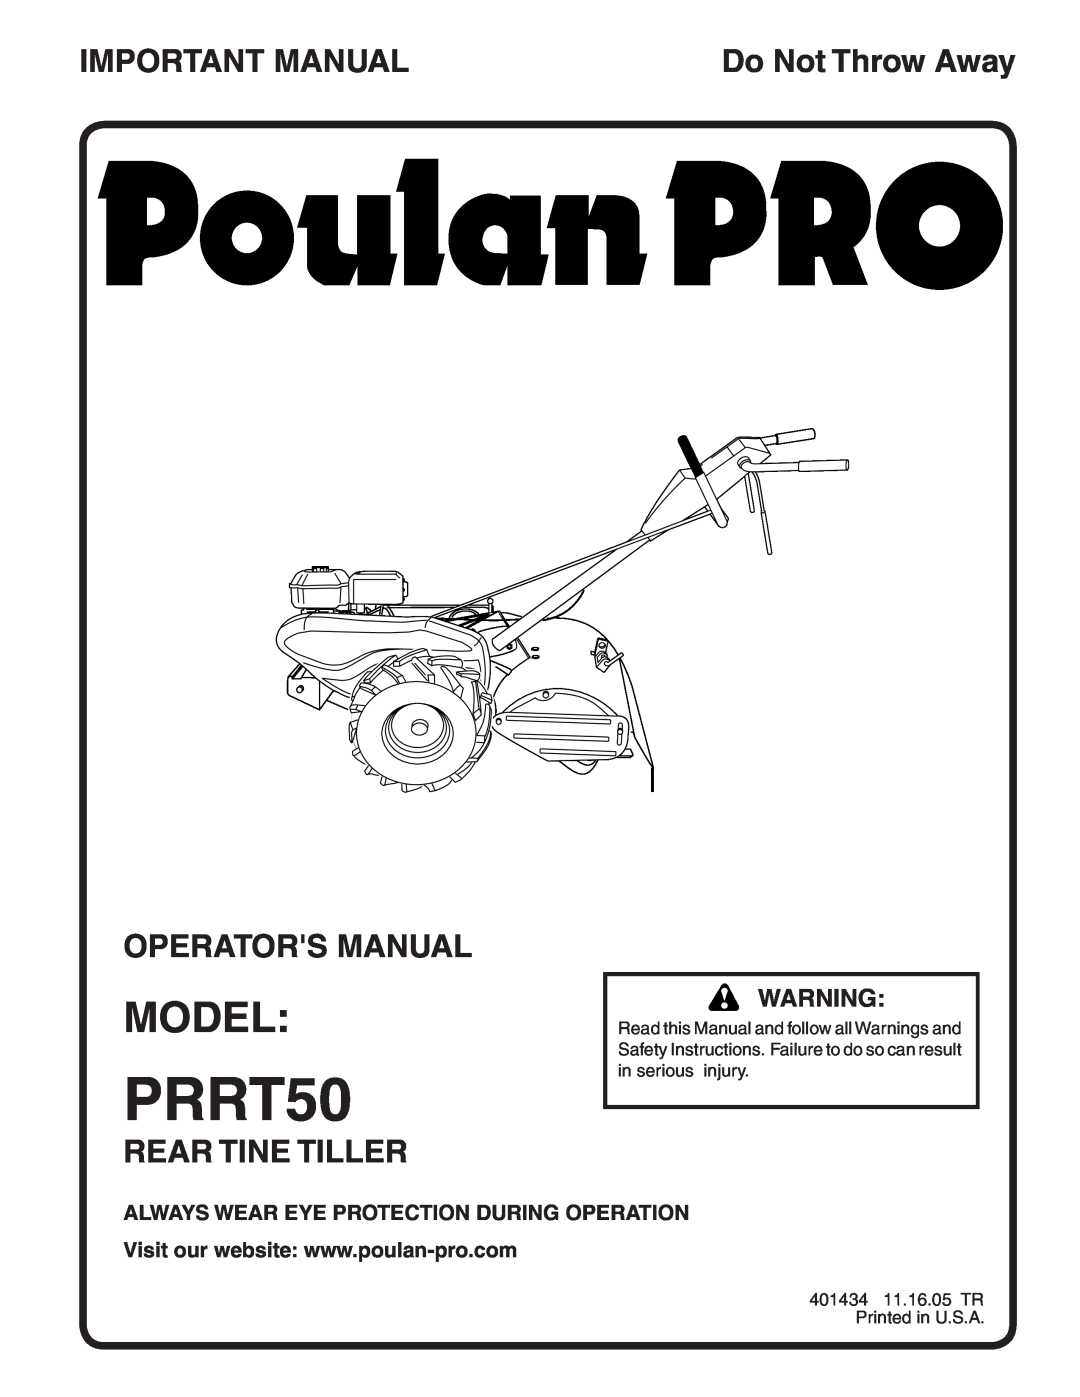 Poulan 401434 manual Model, Important Manual, Operators Manual, Rear Tine Tiller, PRRT50, Do Not Throw Away 